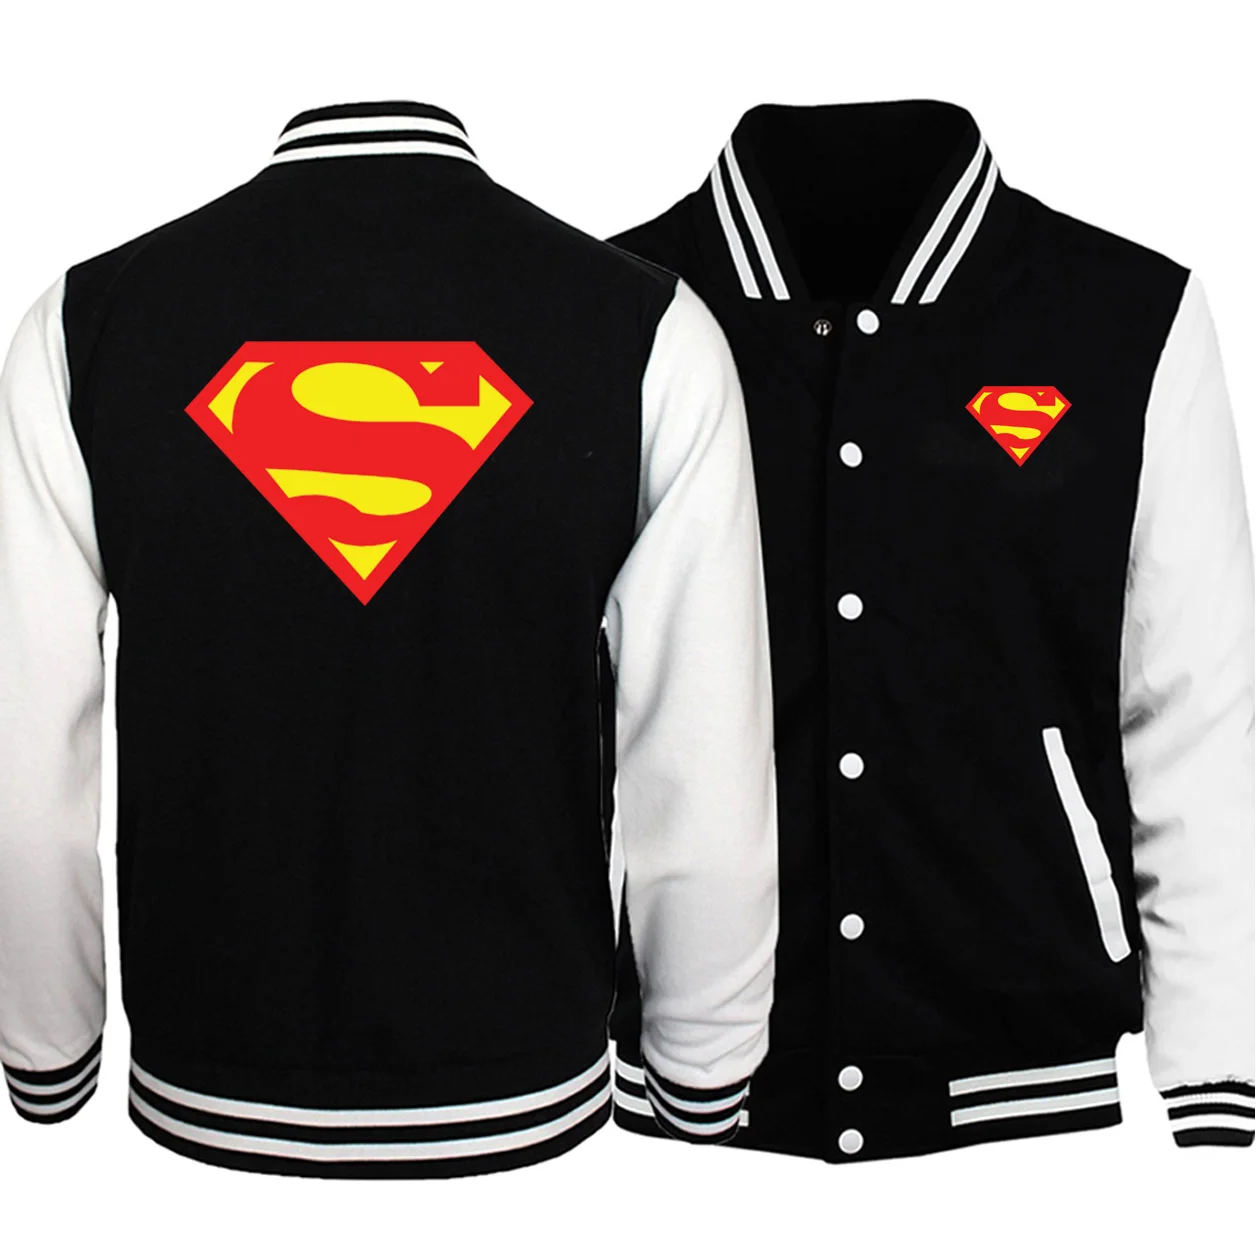 Горячая Распродажа зимние куртки с принтом Супермена мужская бейсбольная одежда модная уличная куртка-бомбер в стиле хип-хоп Высокое качество Мужское пальто - Цвет: Black White 6